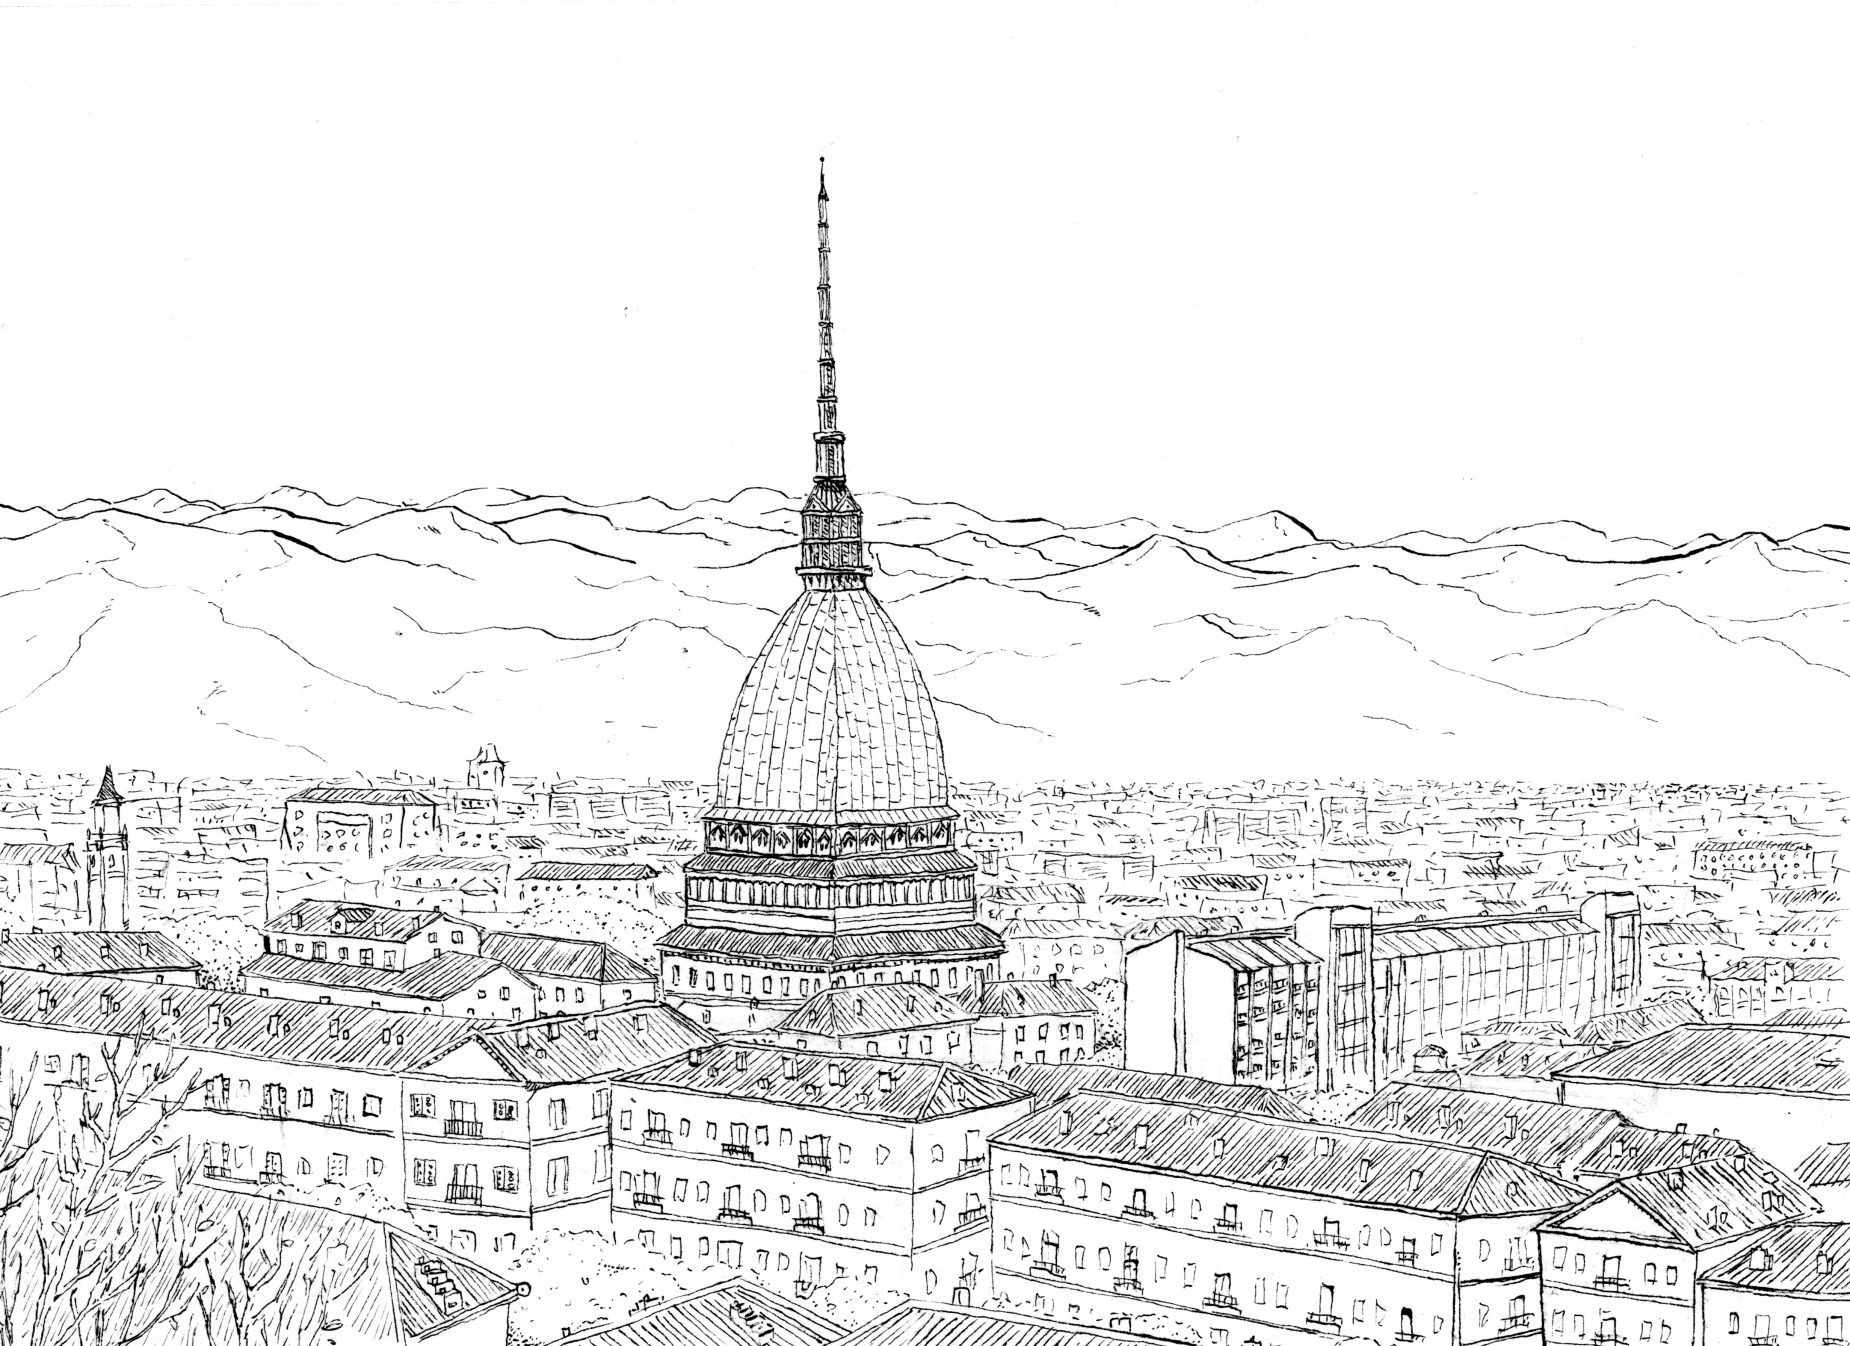 Dibujo con una vista de la Mole Antonelliana en la ciudad de Turín, Italia. Tinta en blanco y negro